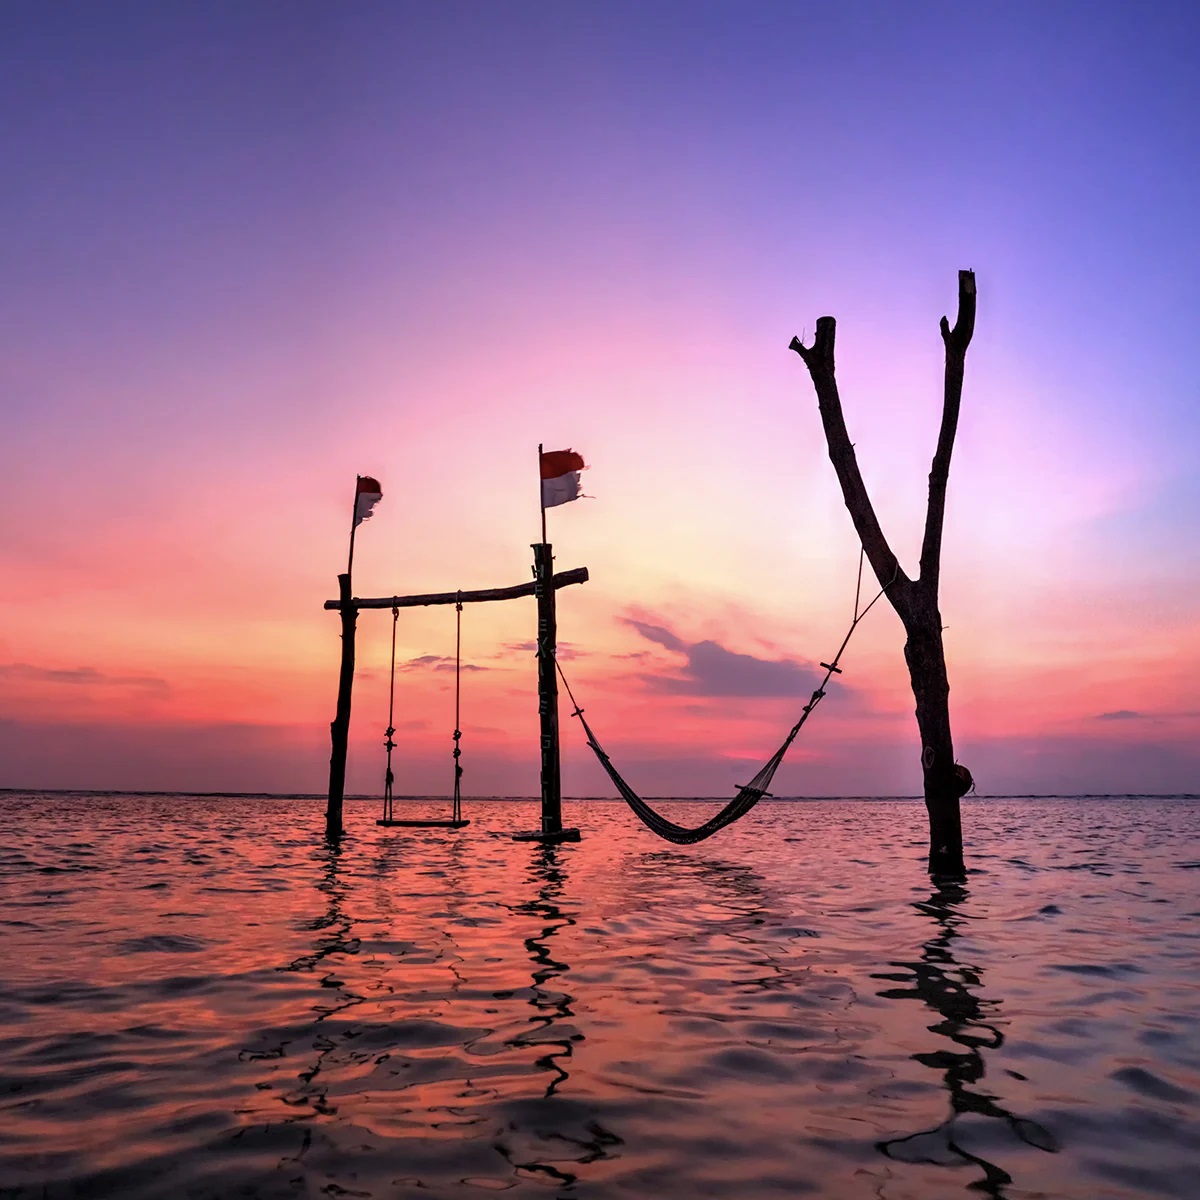 Tempat Wisata Air di Indonesia yang Menarik Perhatian Wisatawan di Seluruh Dunia